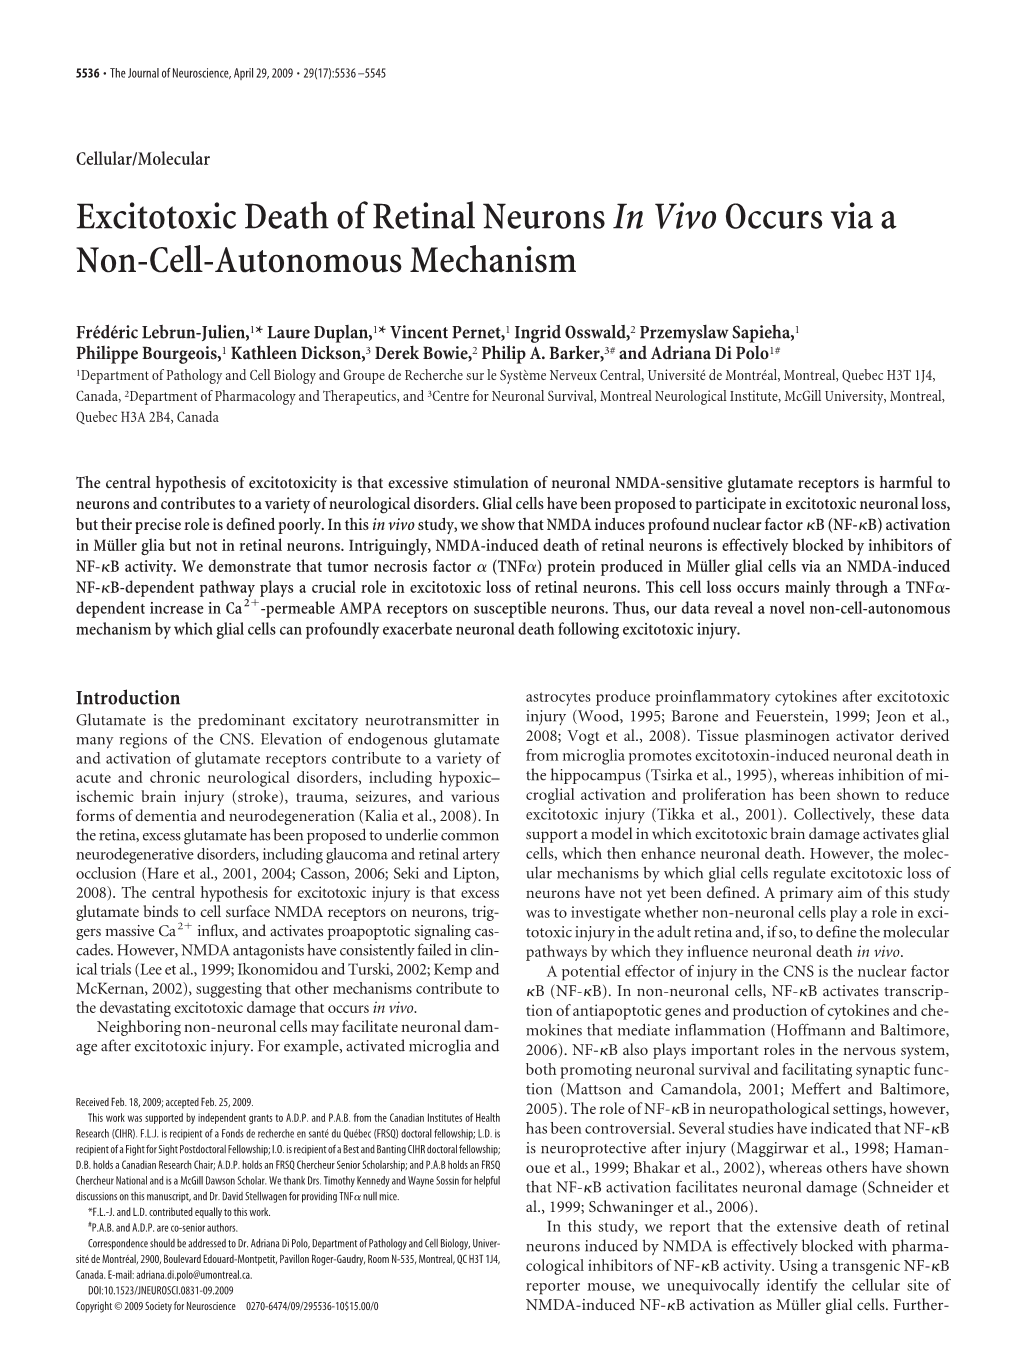 Excitotoxic Death of Retinal Neuronsin Vivooccurs Via a Non-Cell